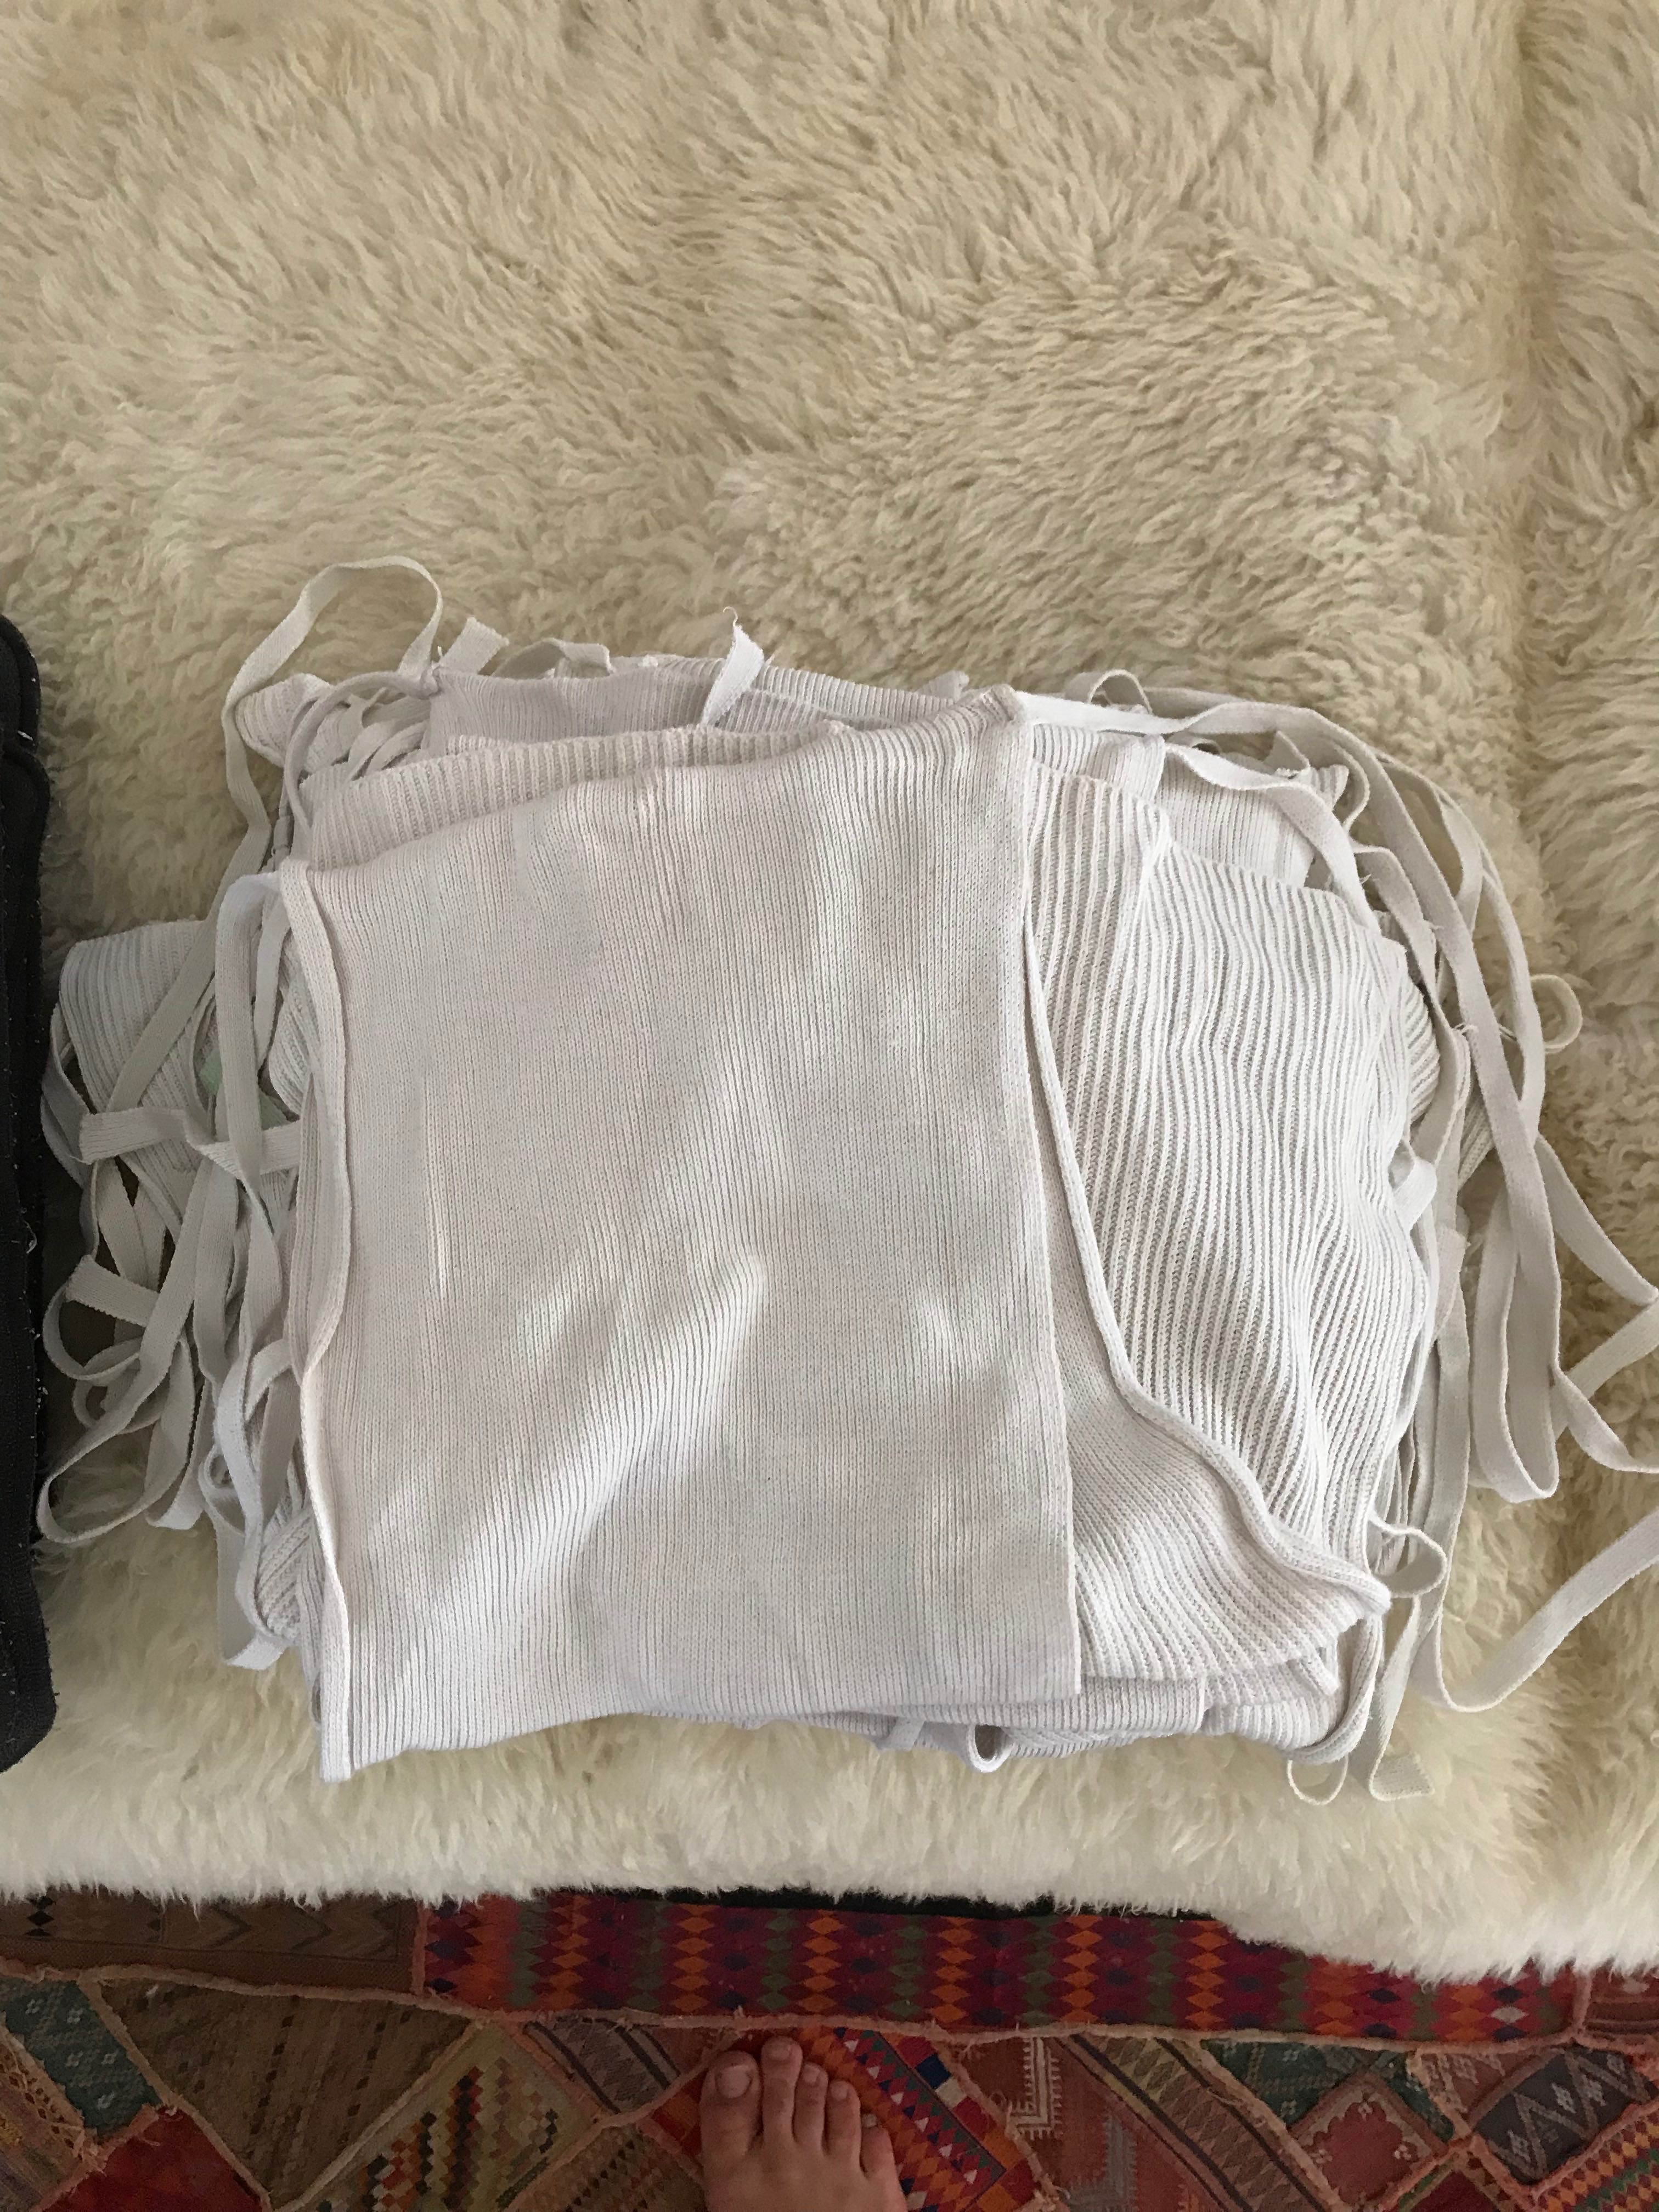 fraldas de pano, cloth diapers